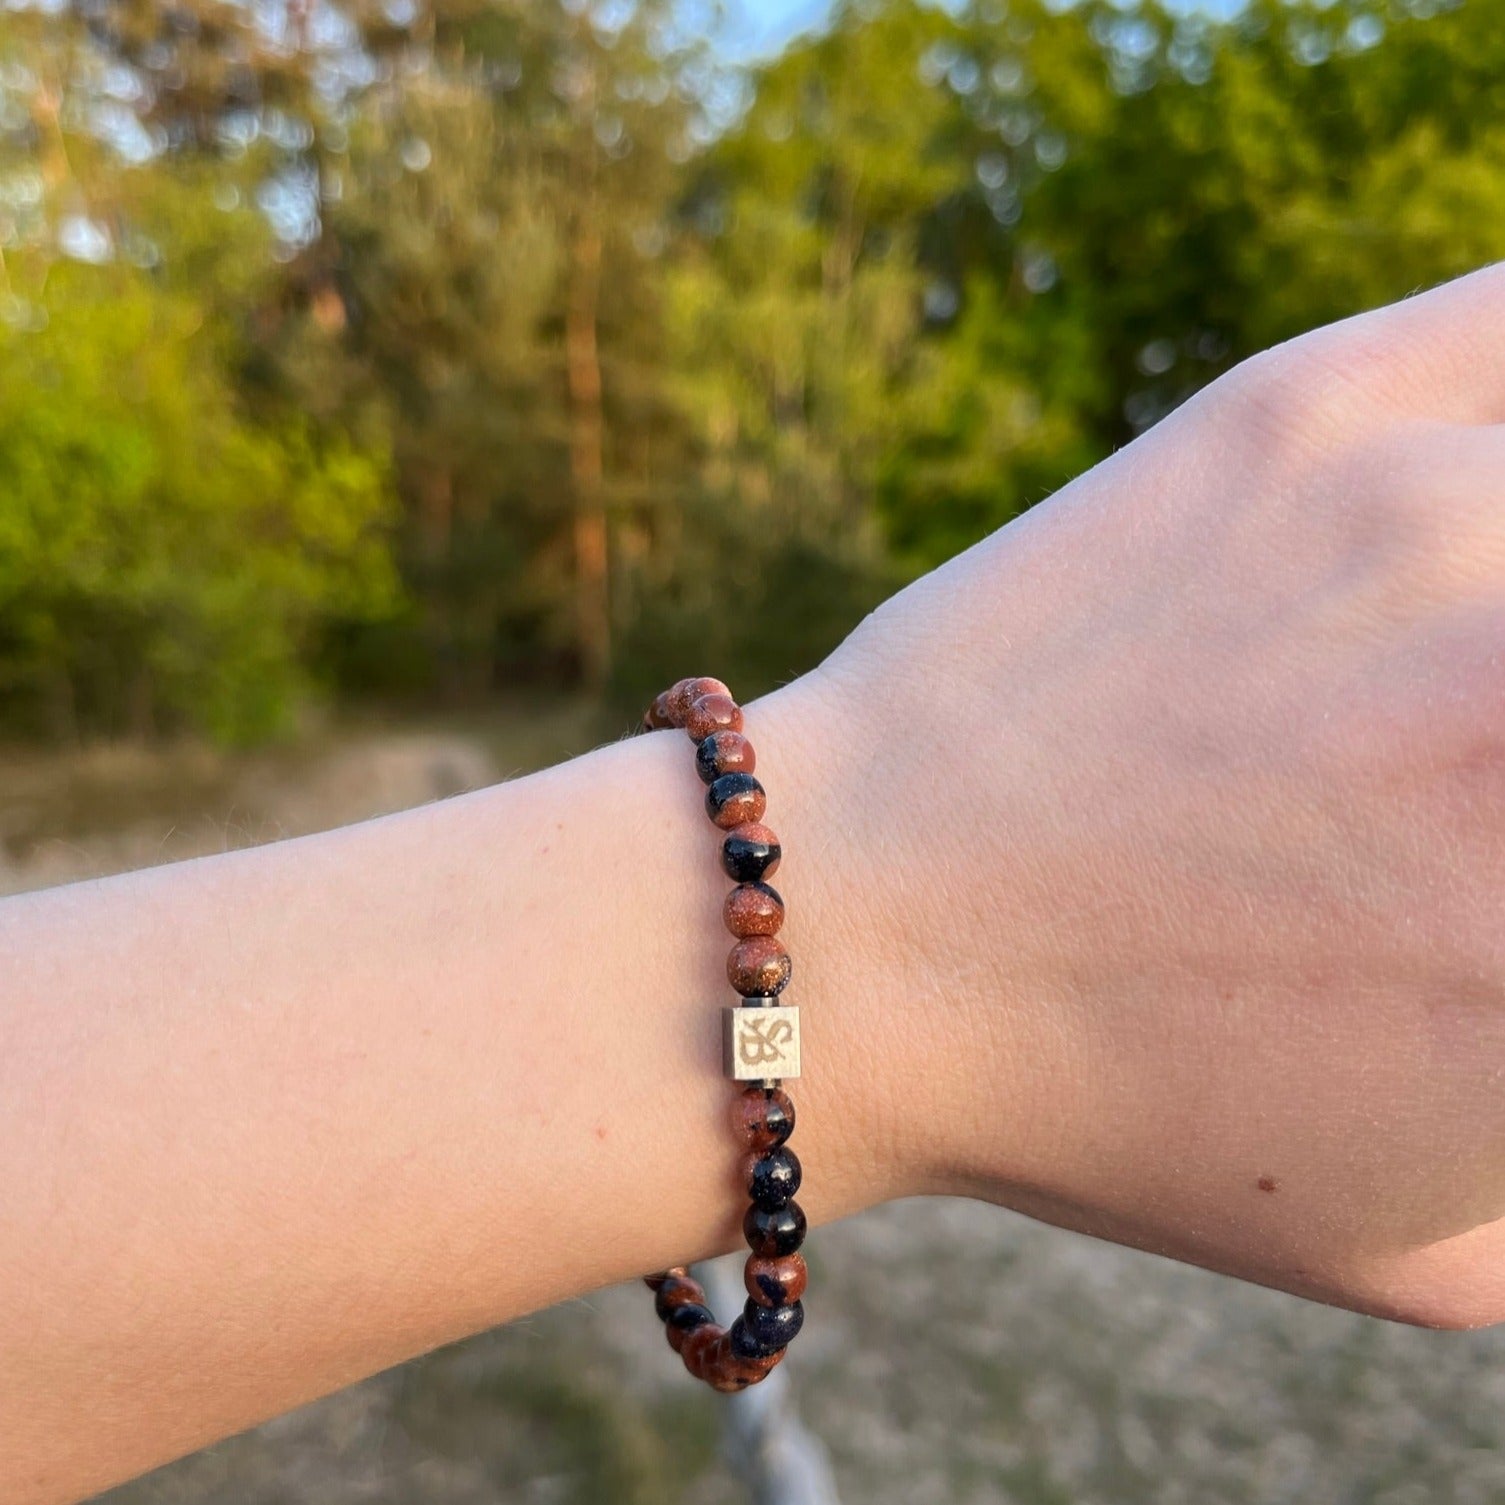 De hand van een vrouw houdt een Stoney Bracelets armband met koperen zandstenen (6 mm) gemaakt van natuursteen.